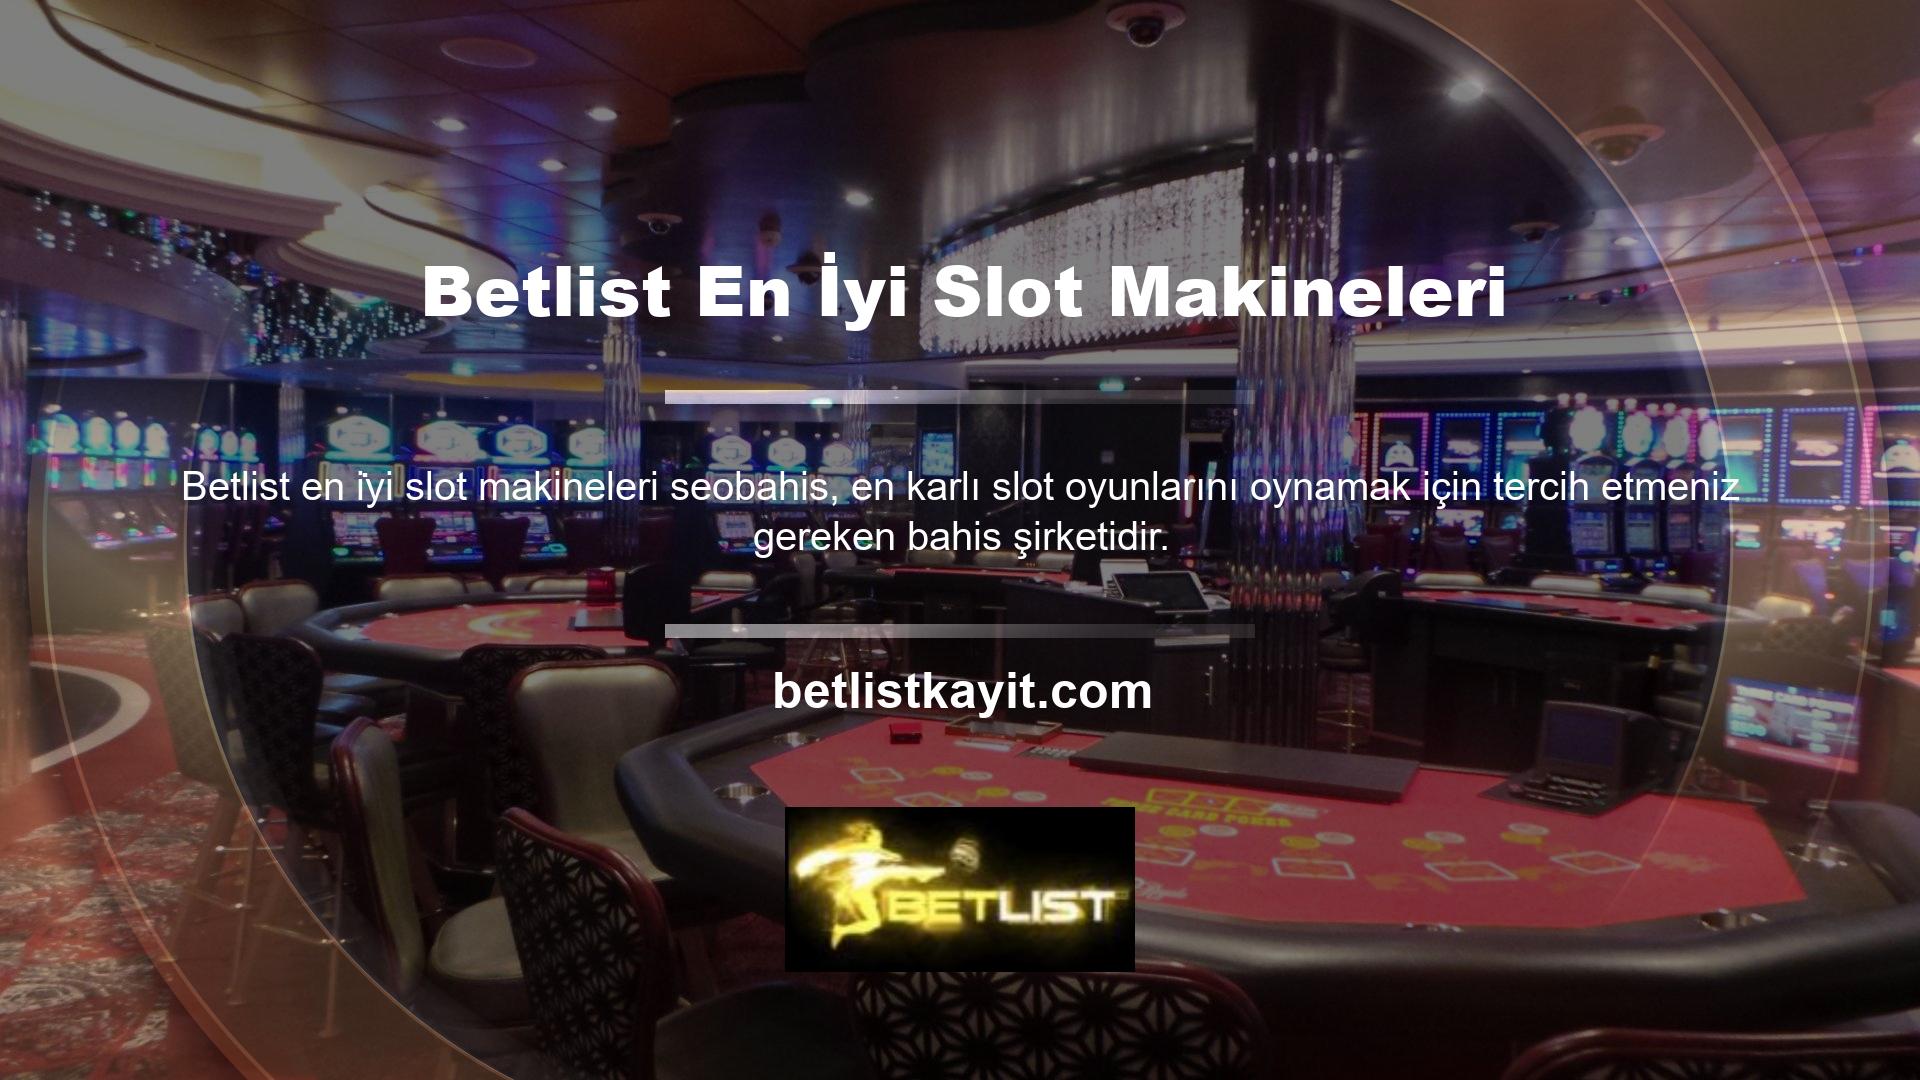 Kullanıcıların yasa dışı casino sitelerinde bahis oynamalarının temel nedeni, yasal olanlardan daha fazla gelir fırsatı sunmalarıdır